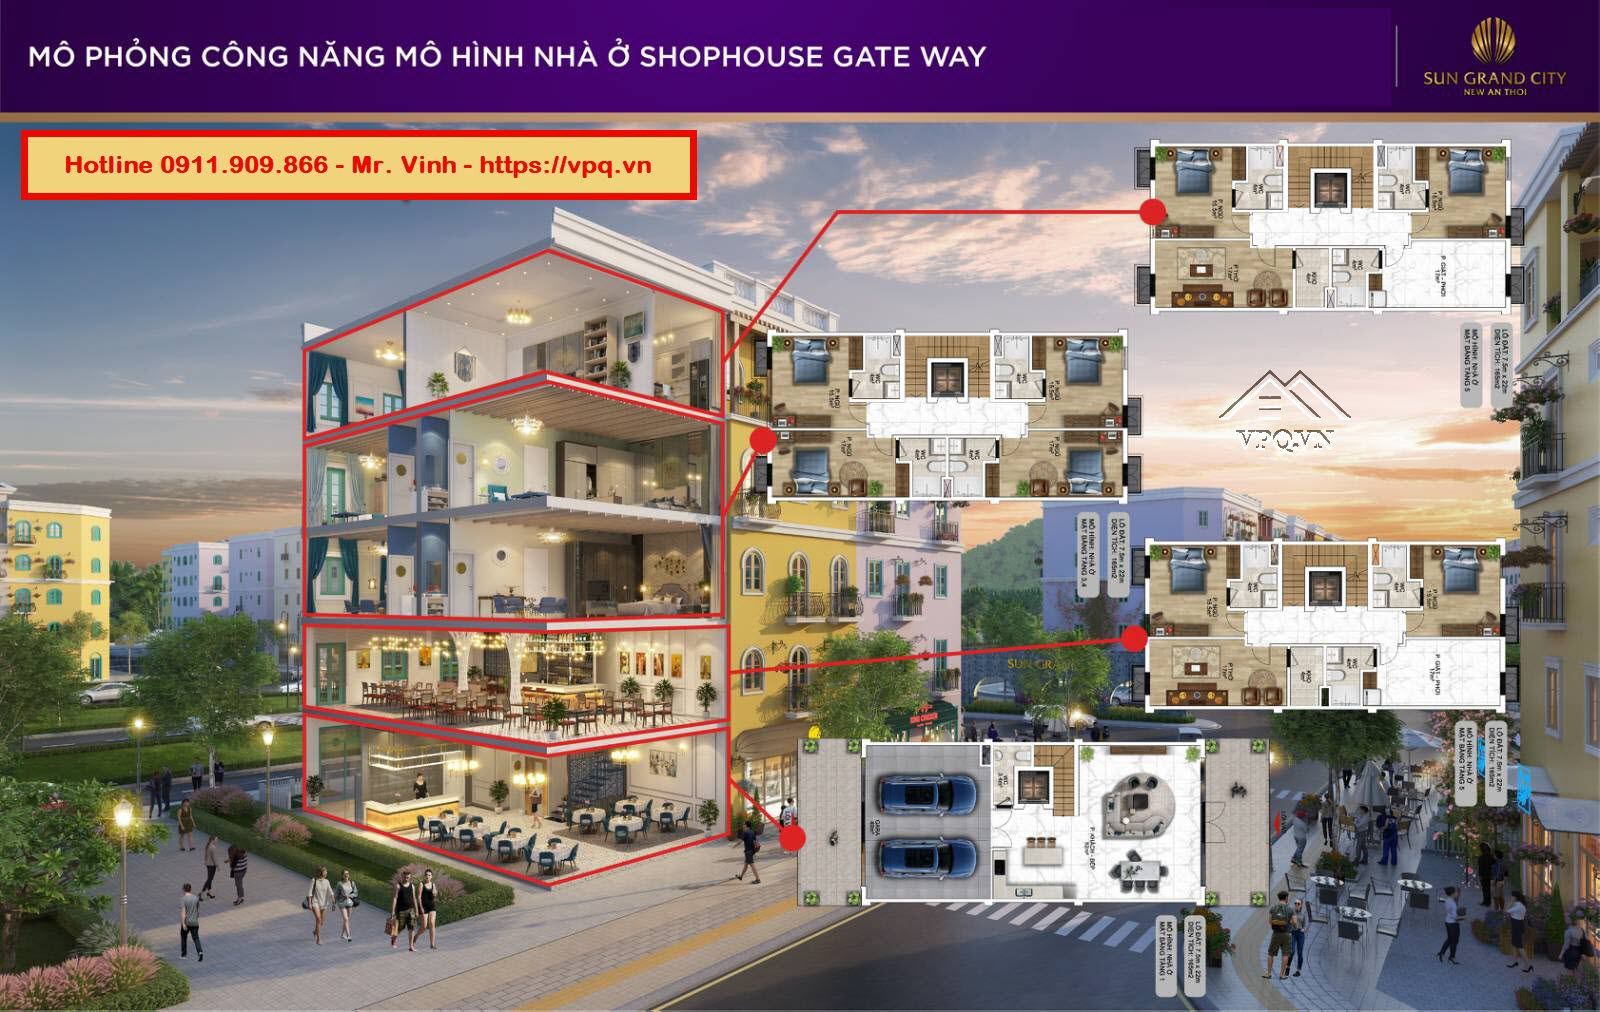 Thiết kế Shophouse Gateway An Thới mô hình nhà ở